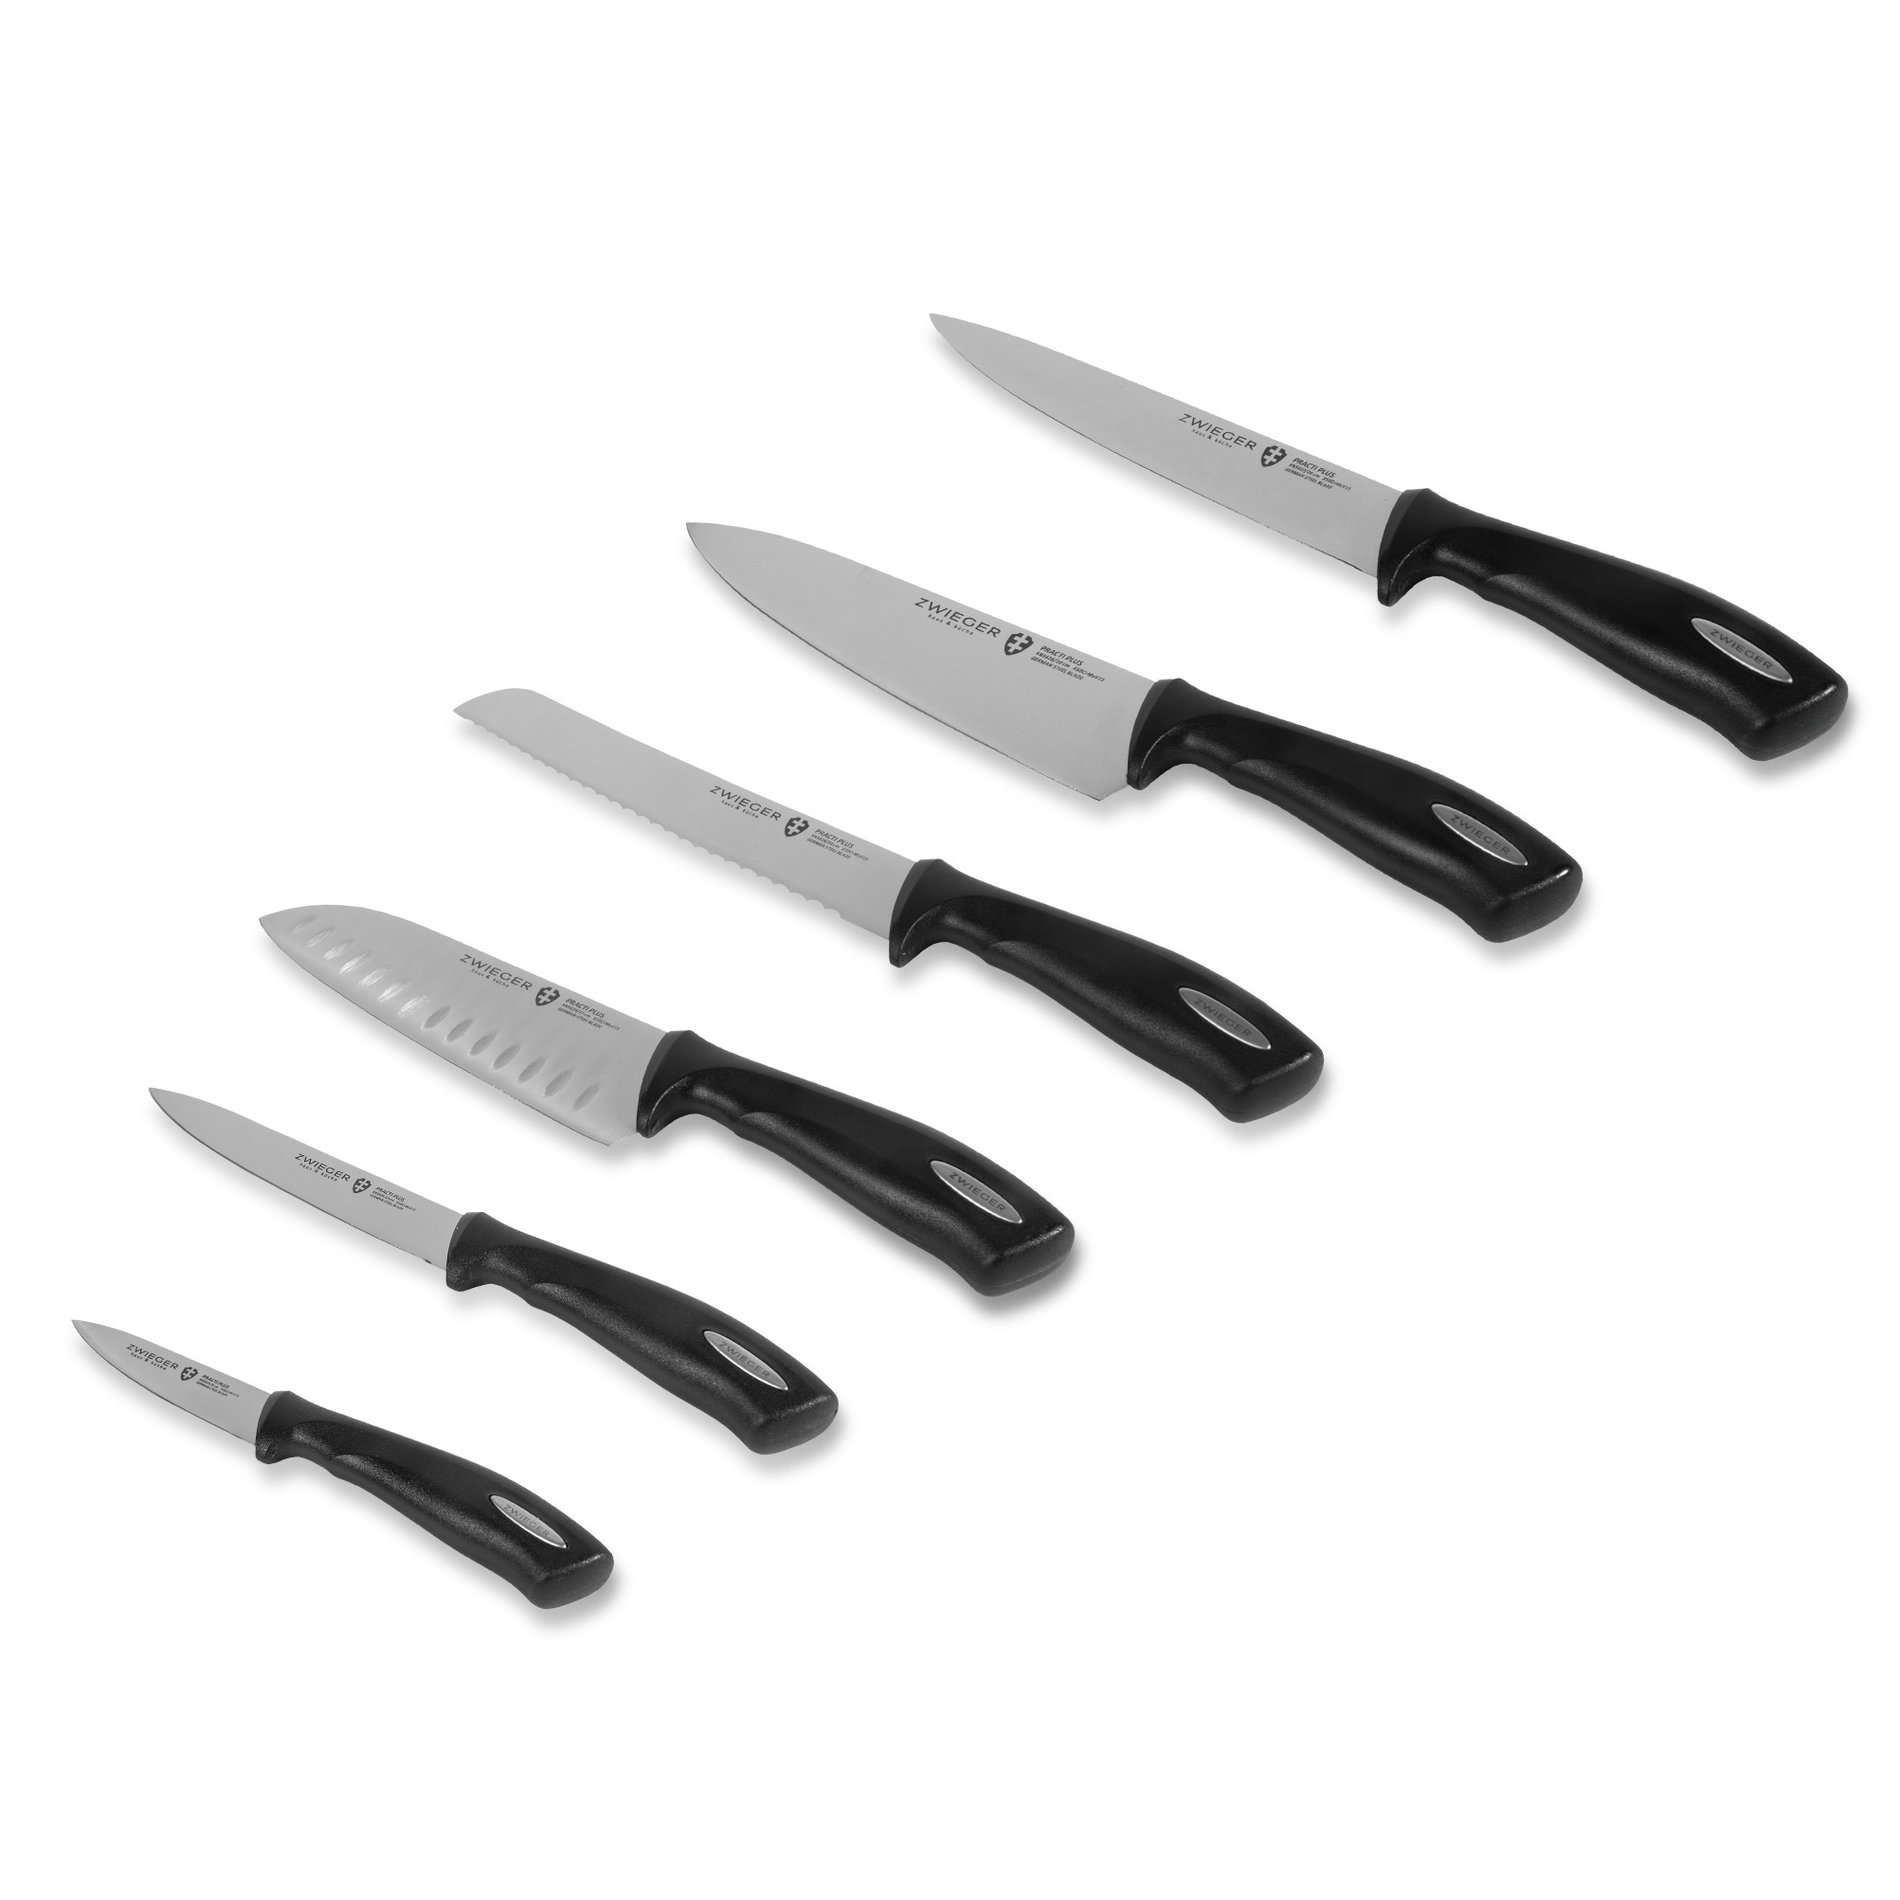 ZWIEGER Practi Plus 6 ks - sada kuchyňských nožů z nerezové oceli